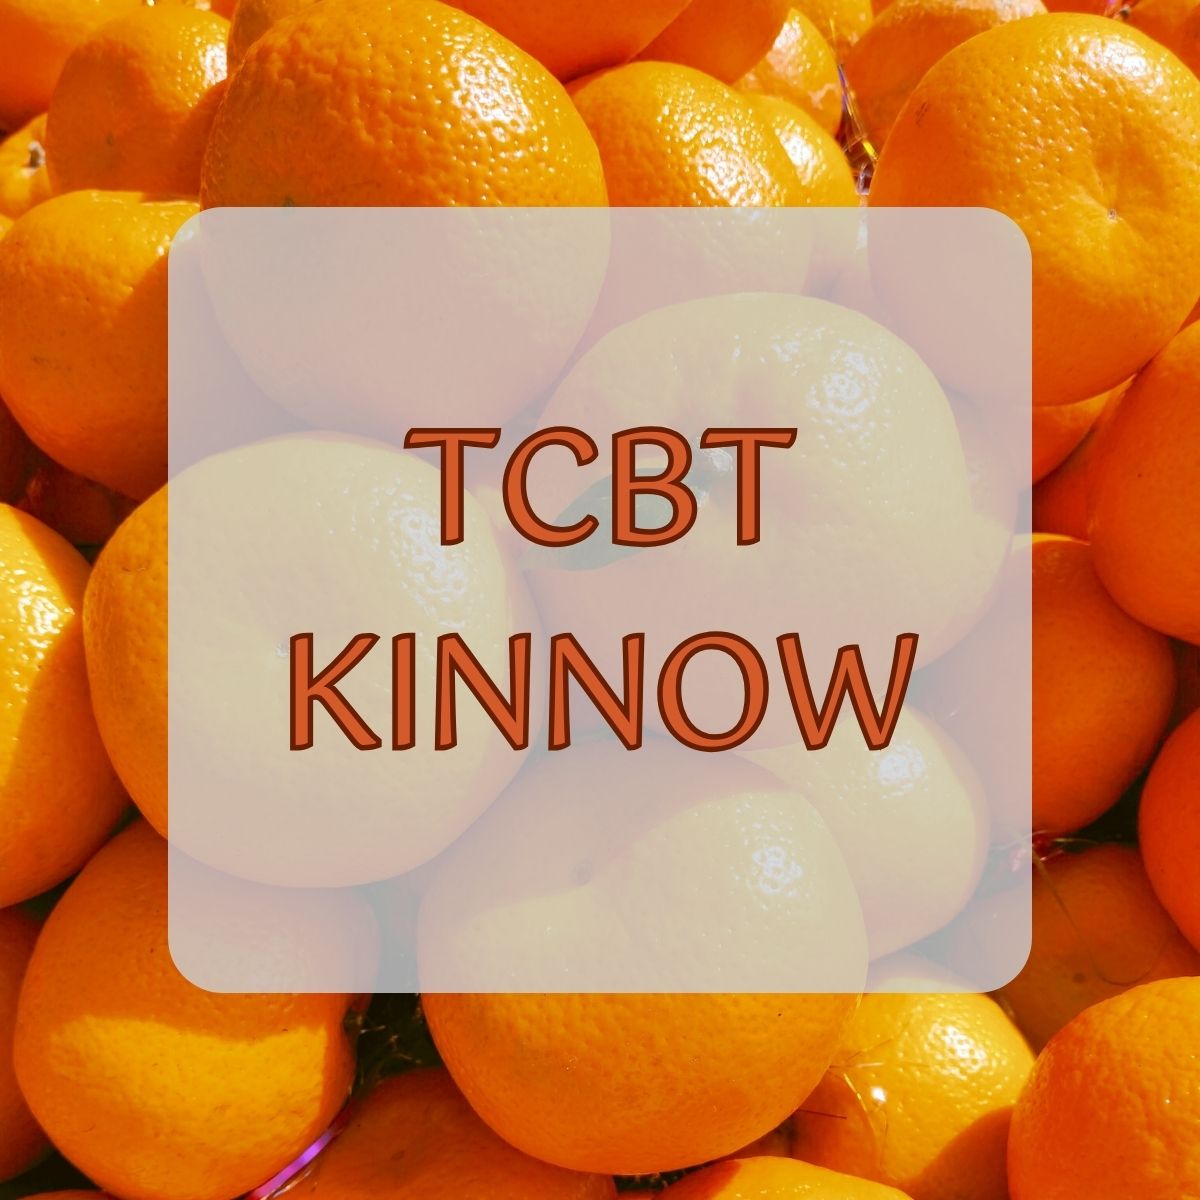 TCBT Kinnow